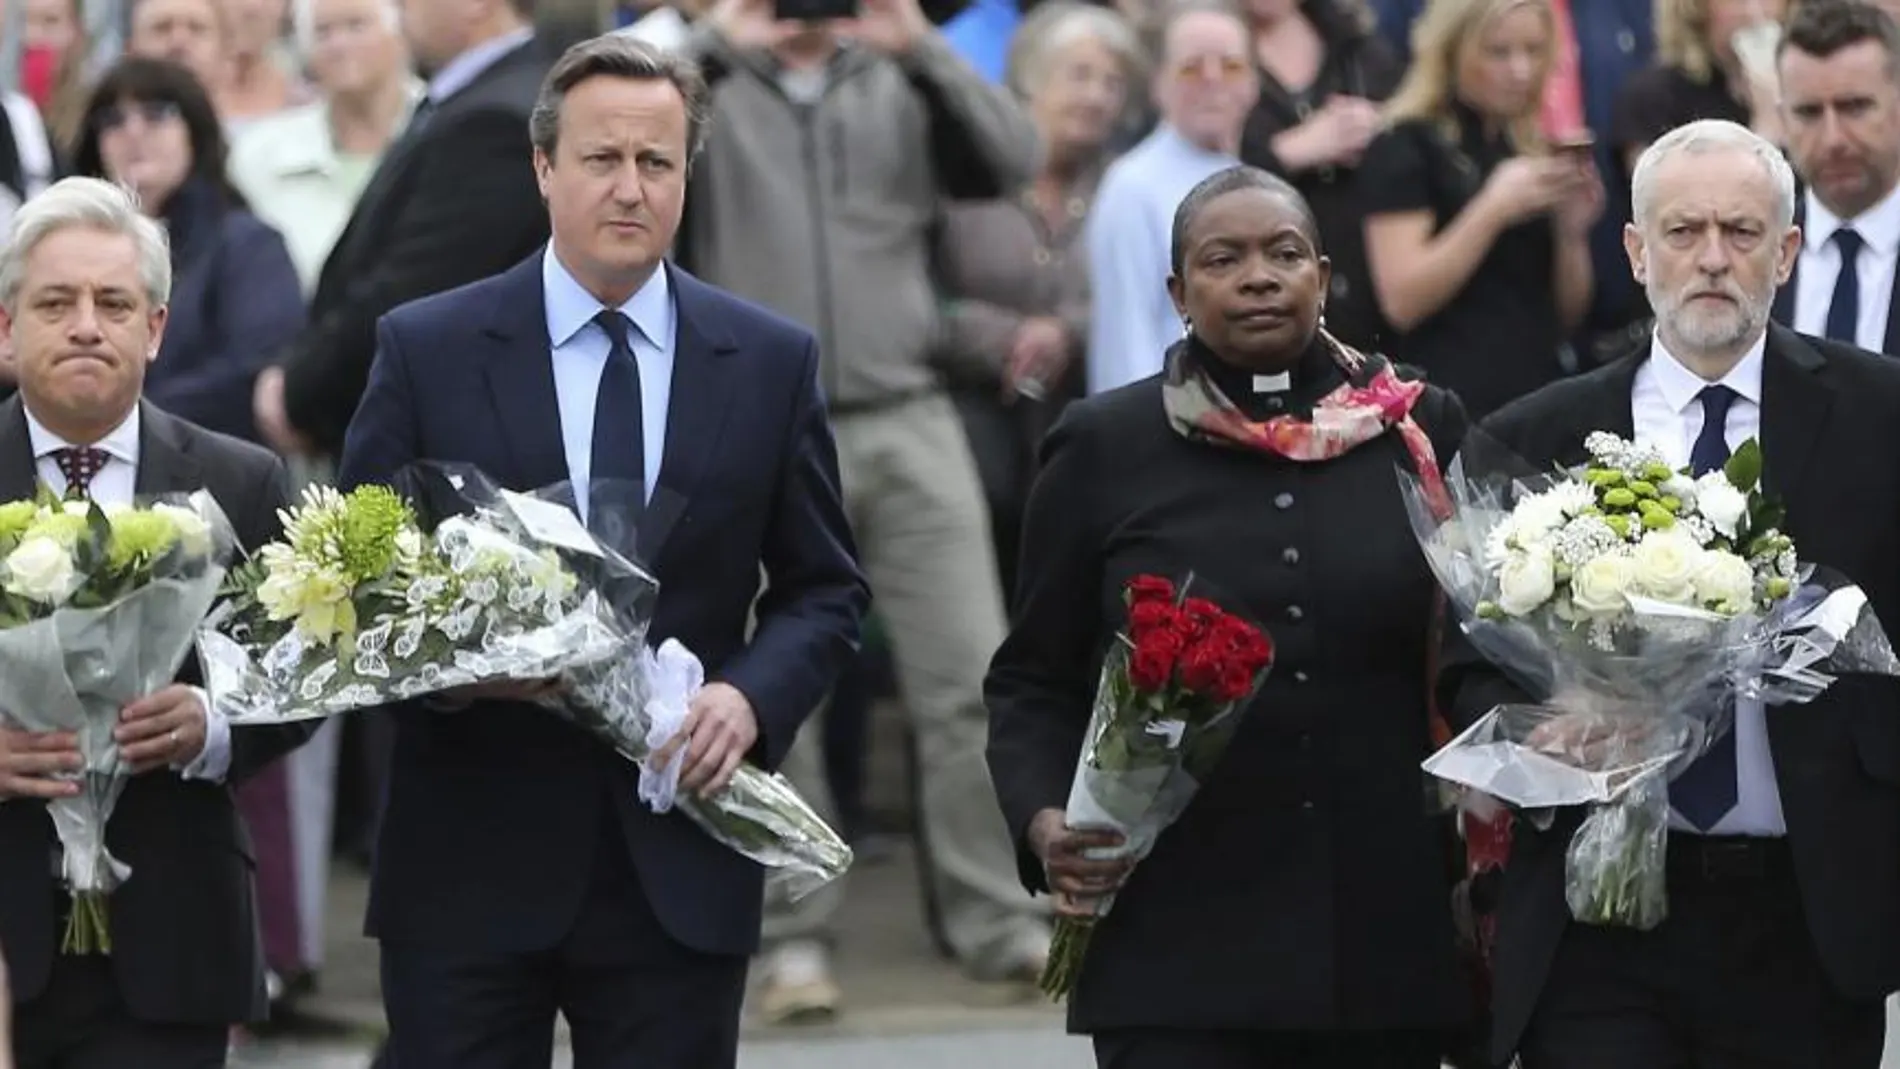 El primer ministro británico David Cameron , presidente de la Cámara de los Comunes británica, John Bercow y el líder laborista Jeremy Corbyn depositan flores en el lugar donde se produjo el asesinato de la diputada laborista Jo Cox